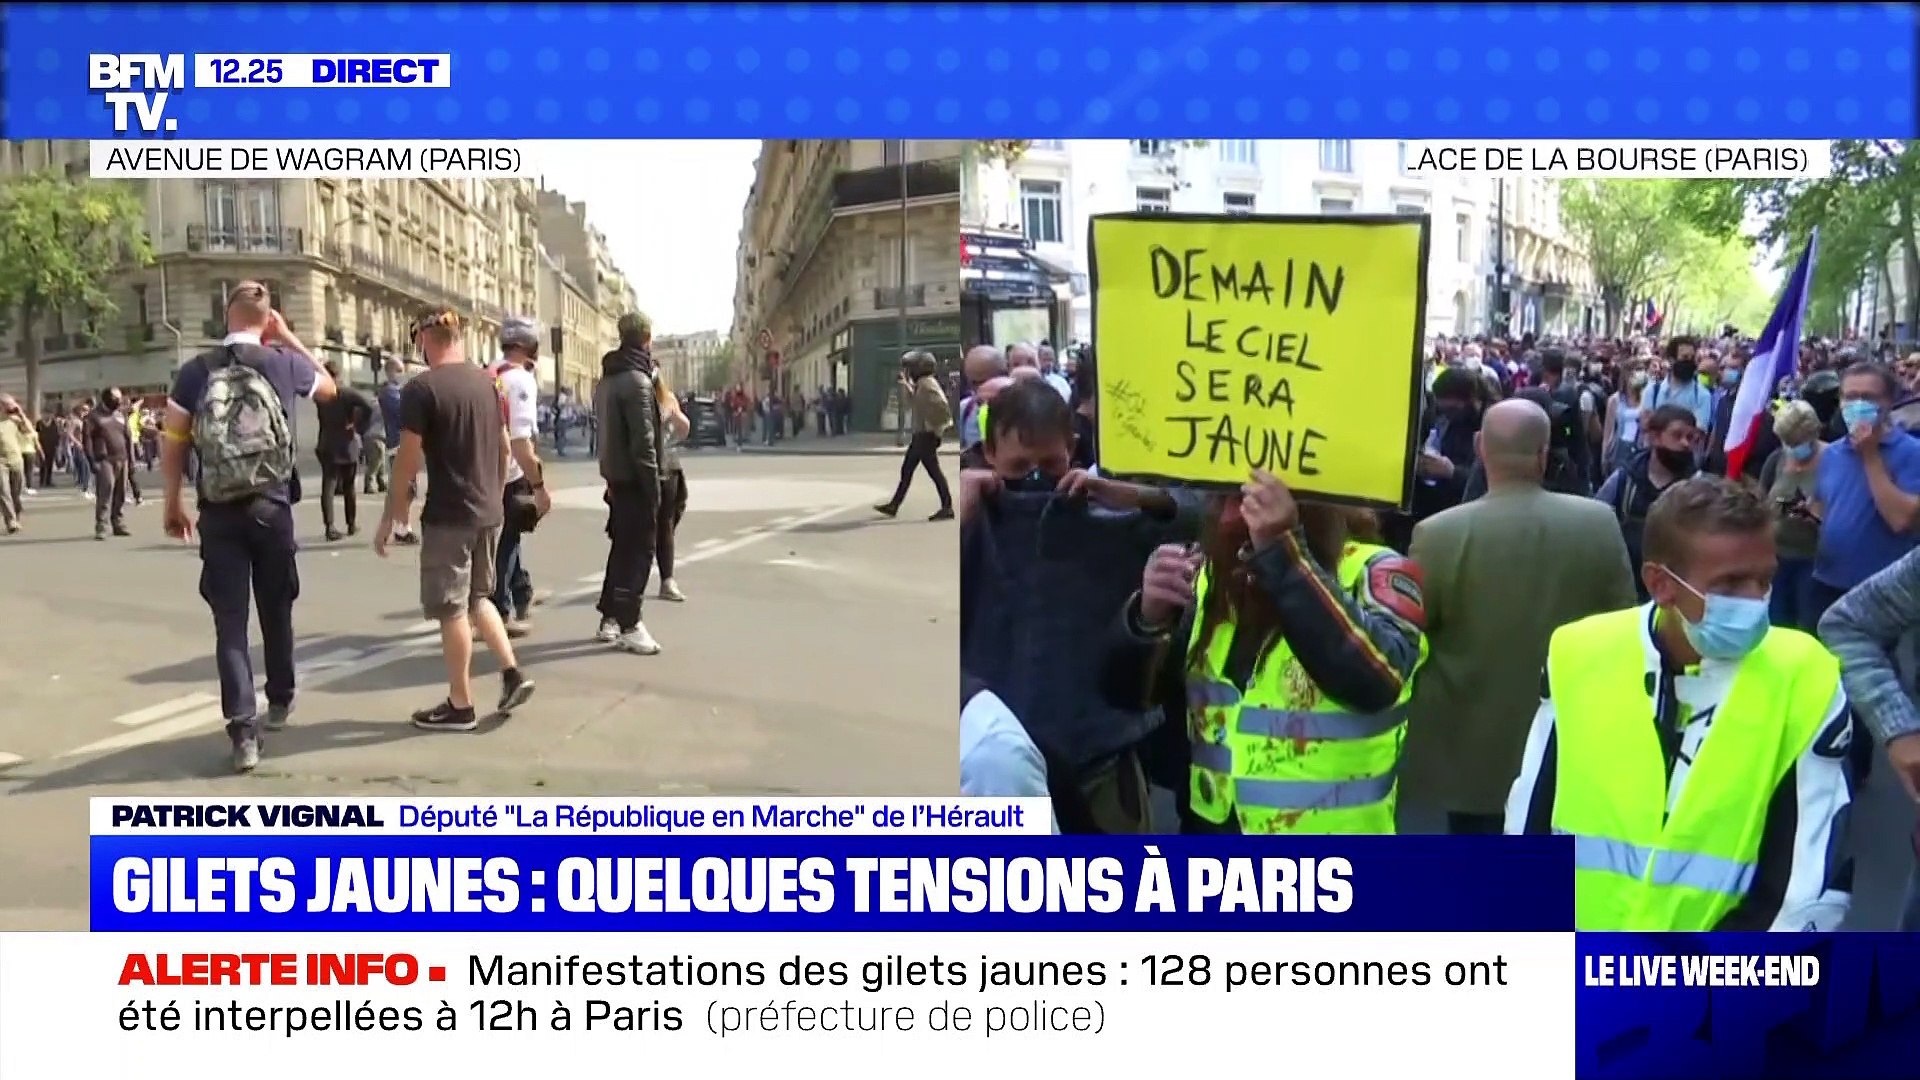 Gilets jaunes: quelques tensions à Paris - 12/09 - Vidéo Dailymotion